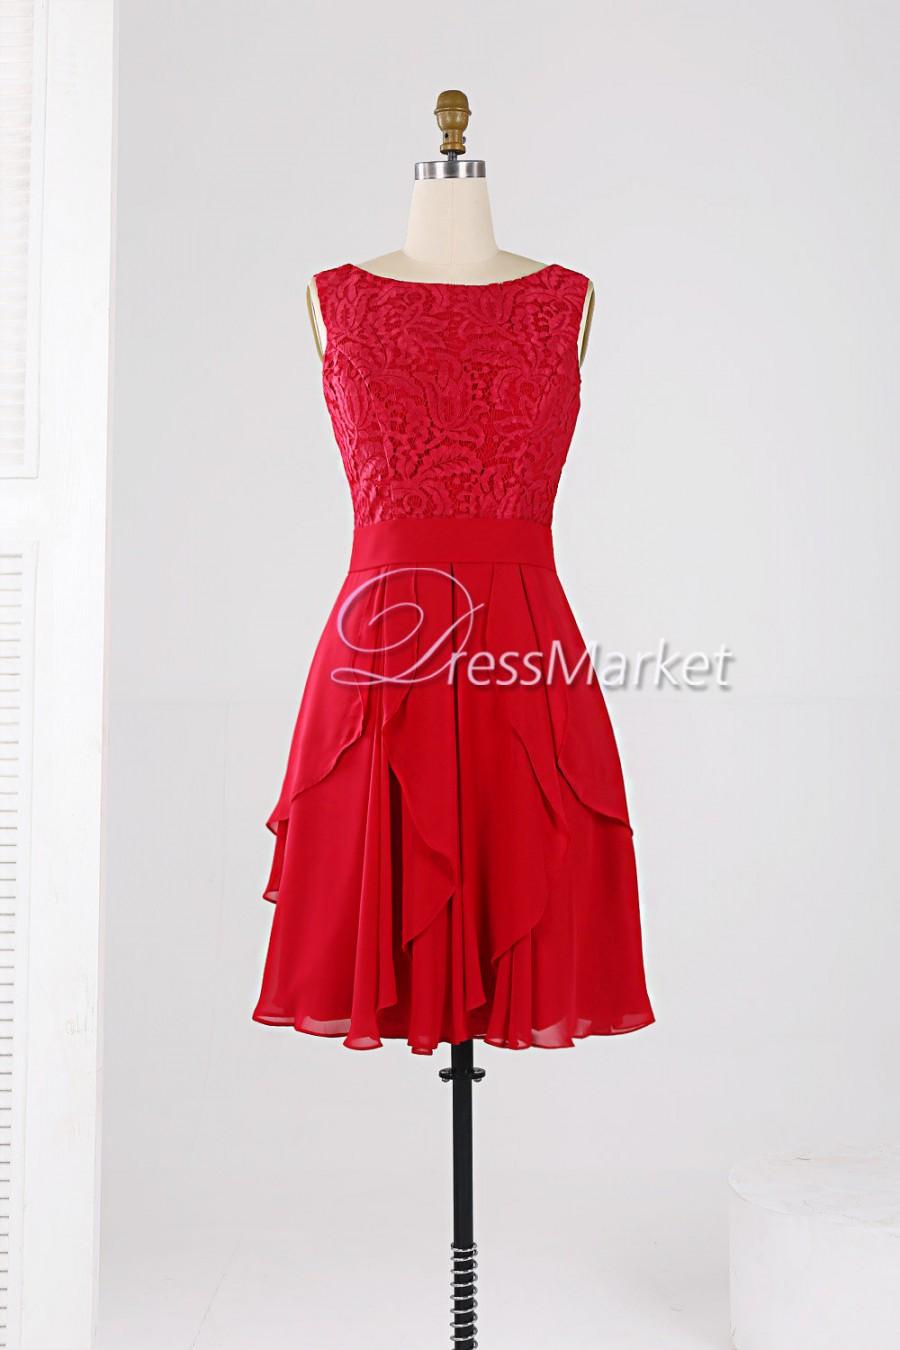 زفاف - Knee length red homecoming dress,Short Bridesmaid dress,Knee length chiffon and lace wedding party dress,Short prom dress,DressMarket022